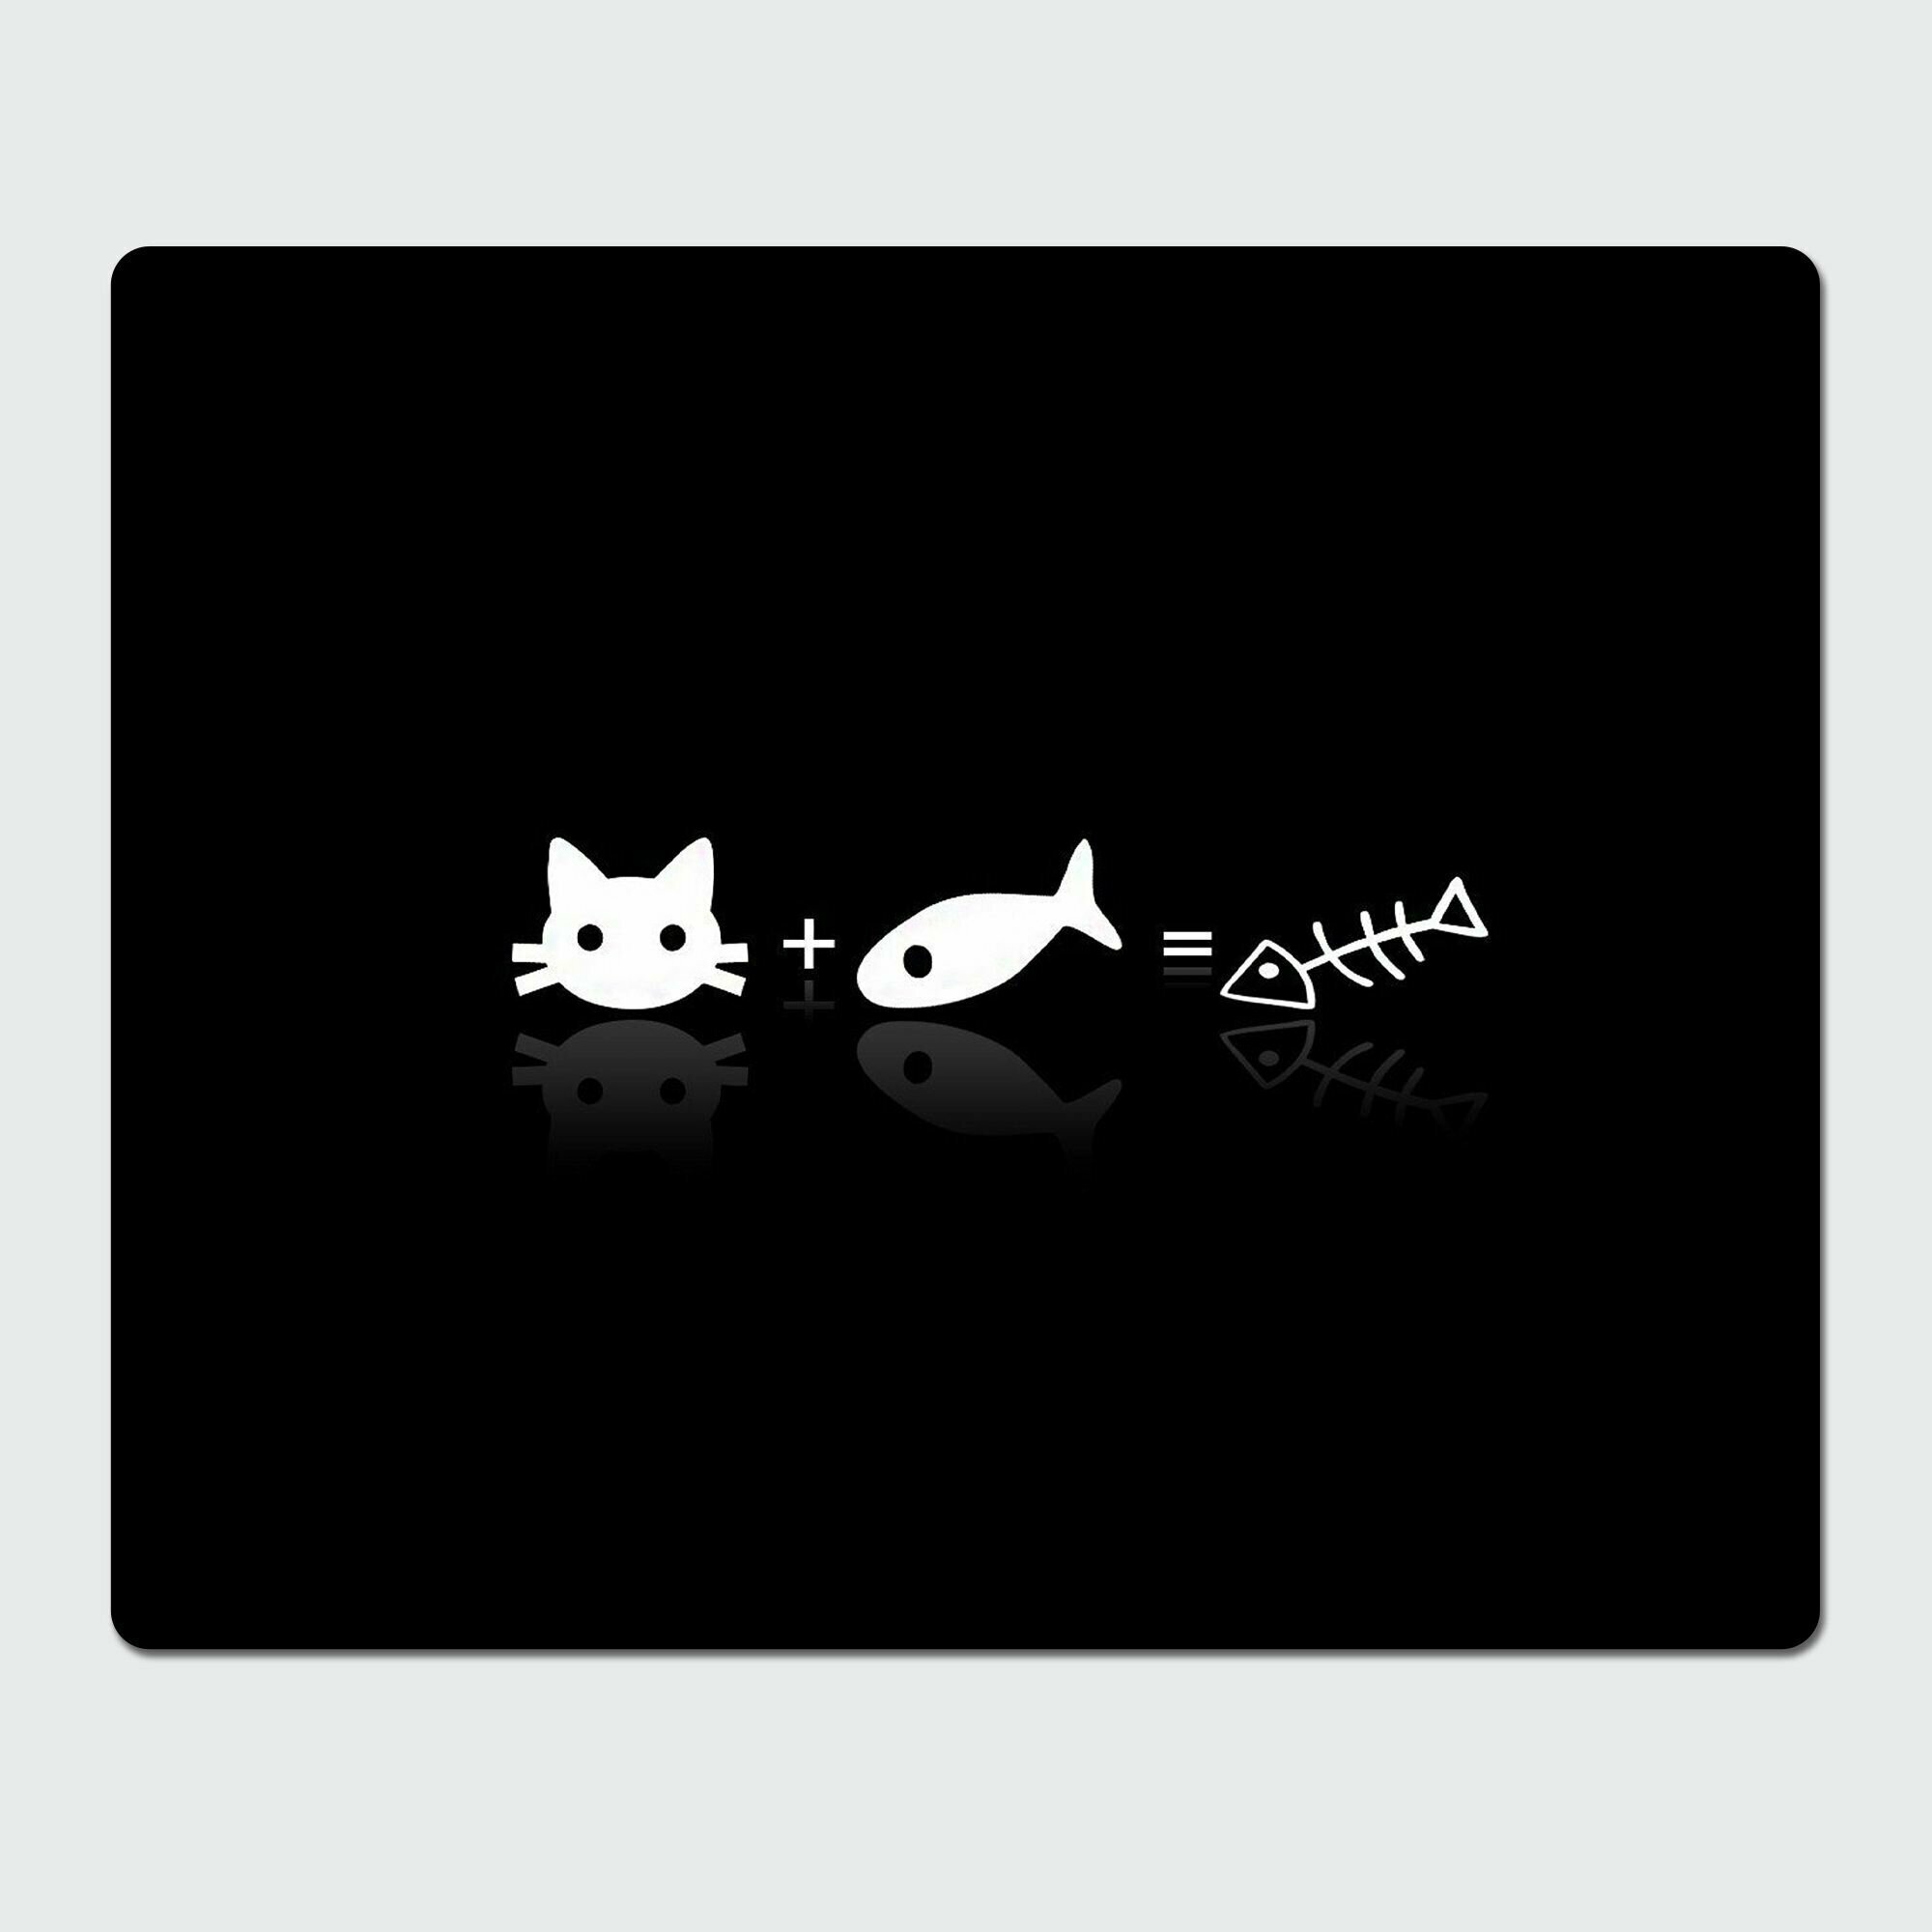 Коврик для компьютерной мышки Rocket - Кошки и коты, 23x19 см